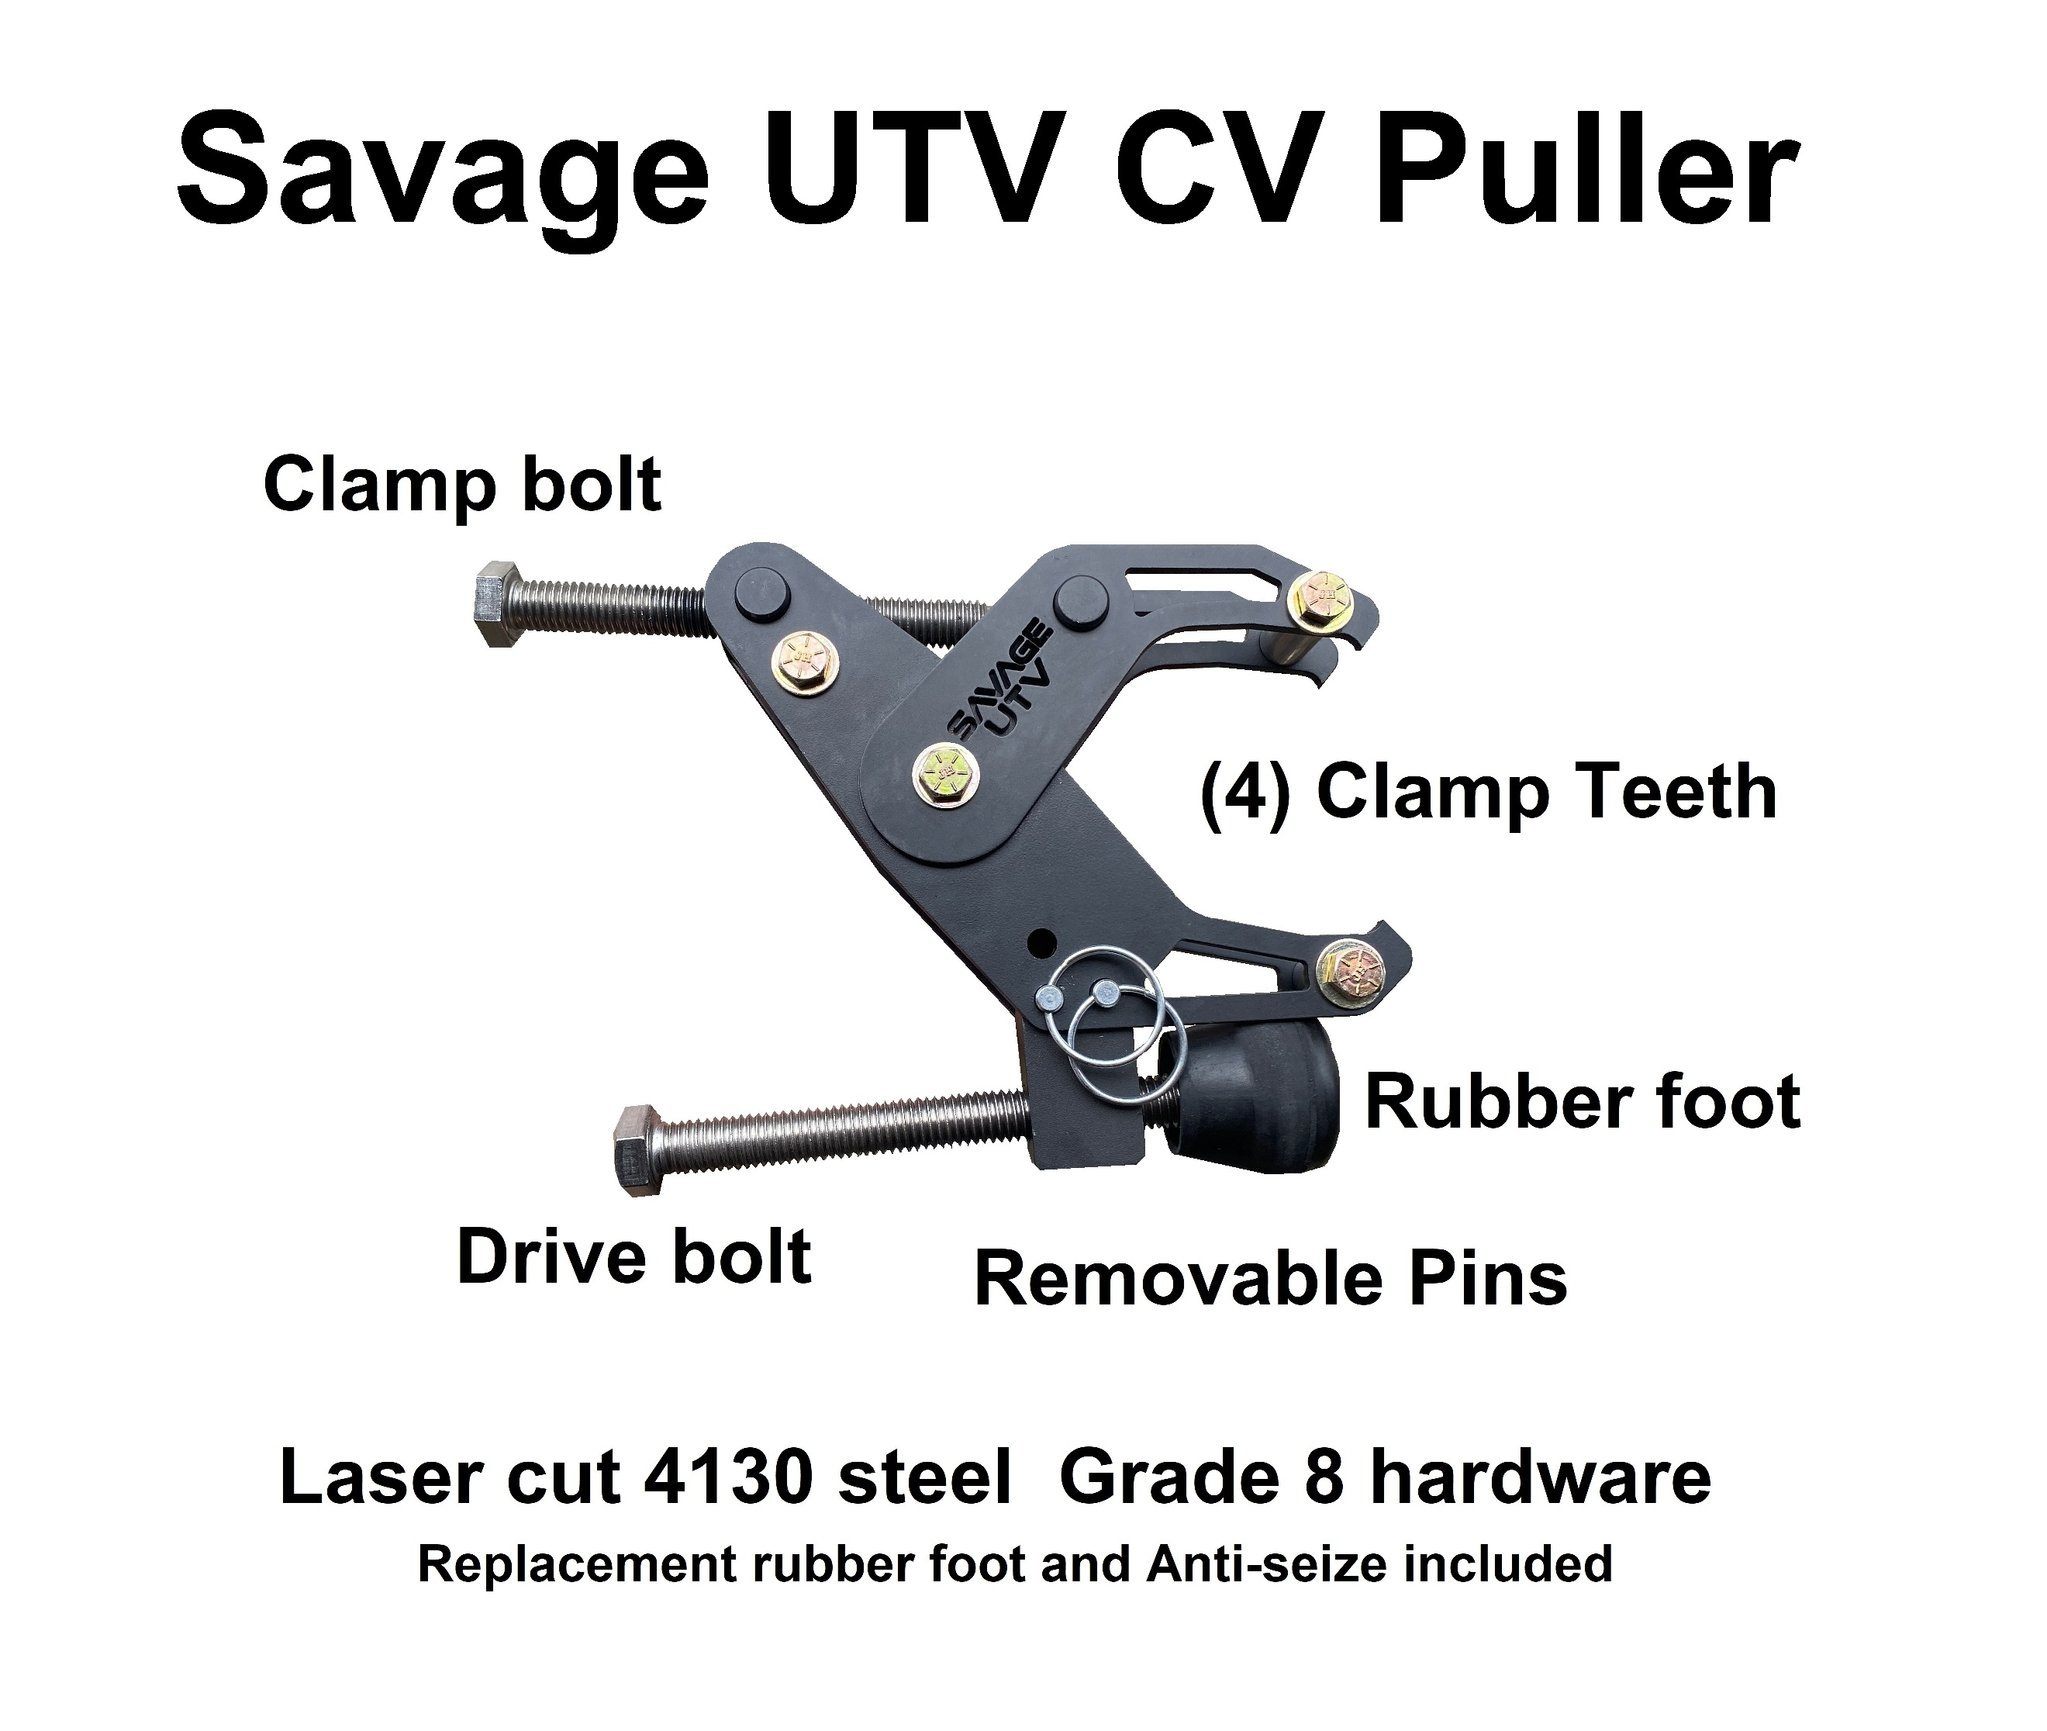 CV Puller Trail Gear Savage UTV display description